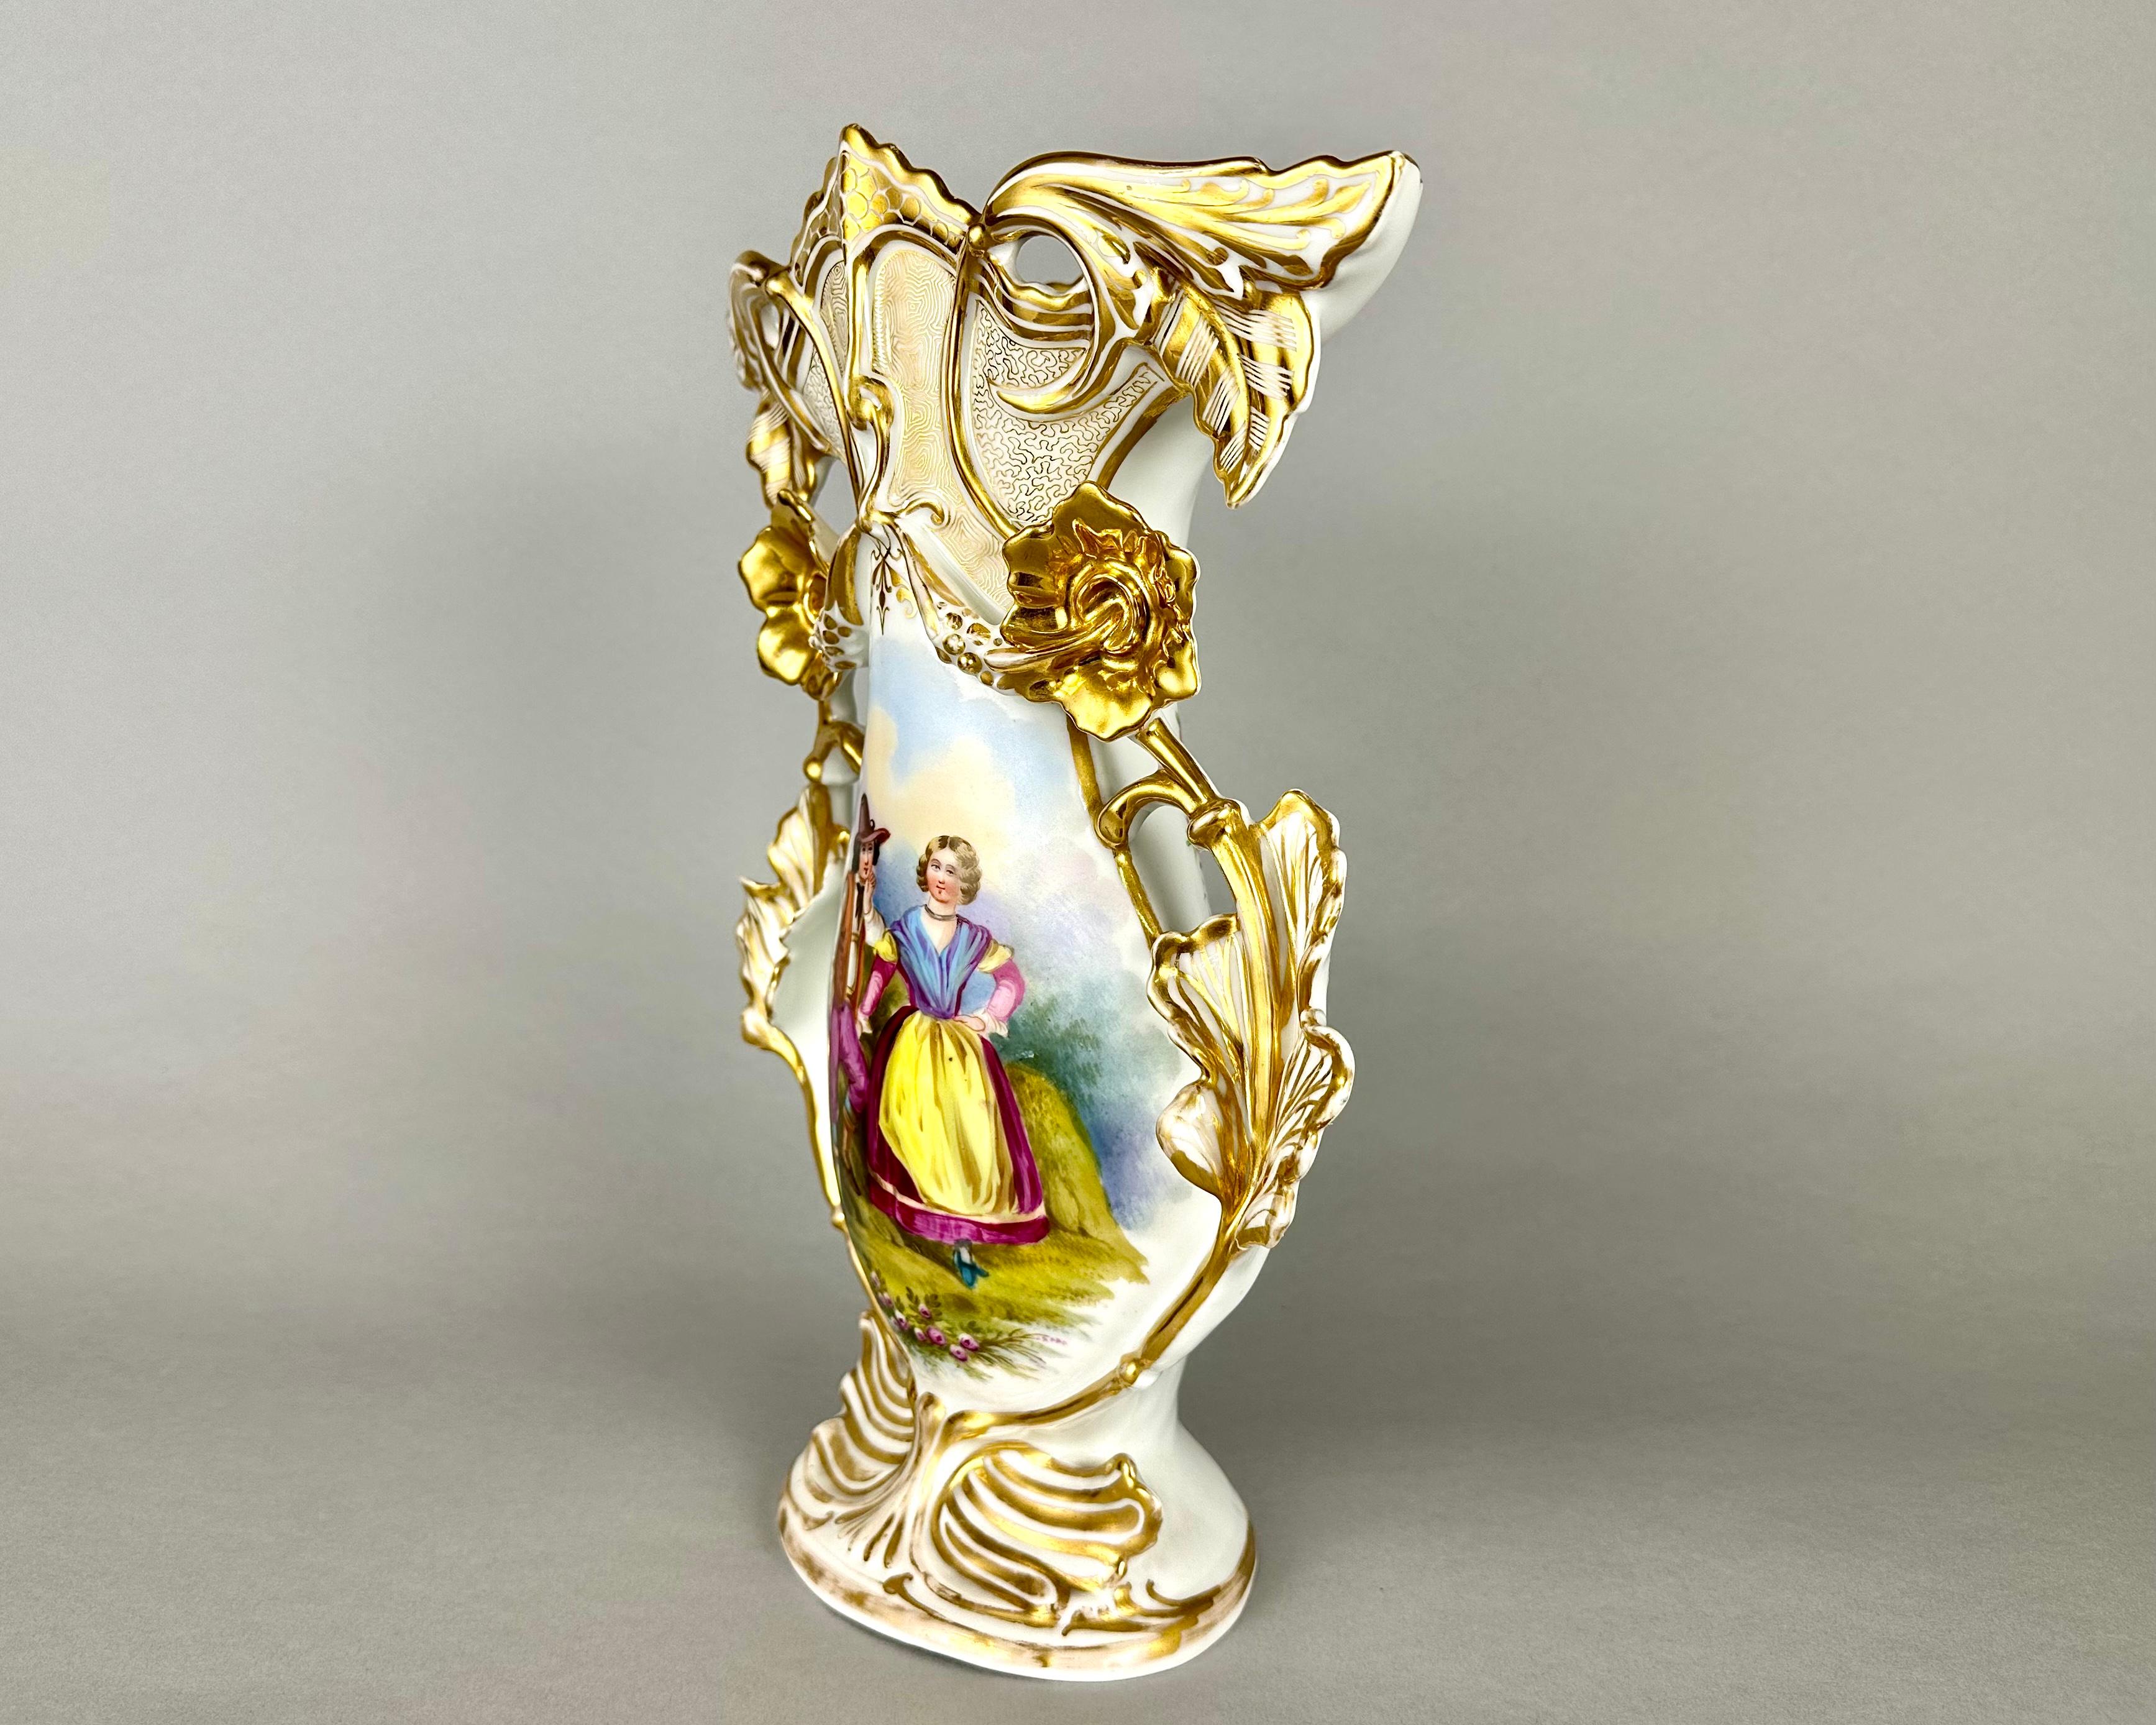 Wunderschöne antike Porzellanvase mit Blumenhenkeln und kunstvoll geformten Deckeln, die in Frankreich Ende des 19. und Anfang des 20. Jahrhunderts hergestellt wurde.

Mit kunstvollem Rokoko-Design im Stil des frühen Meißens.

Mit handgemaltem